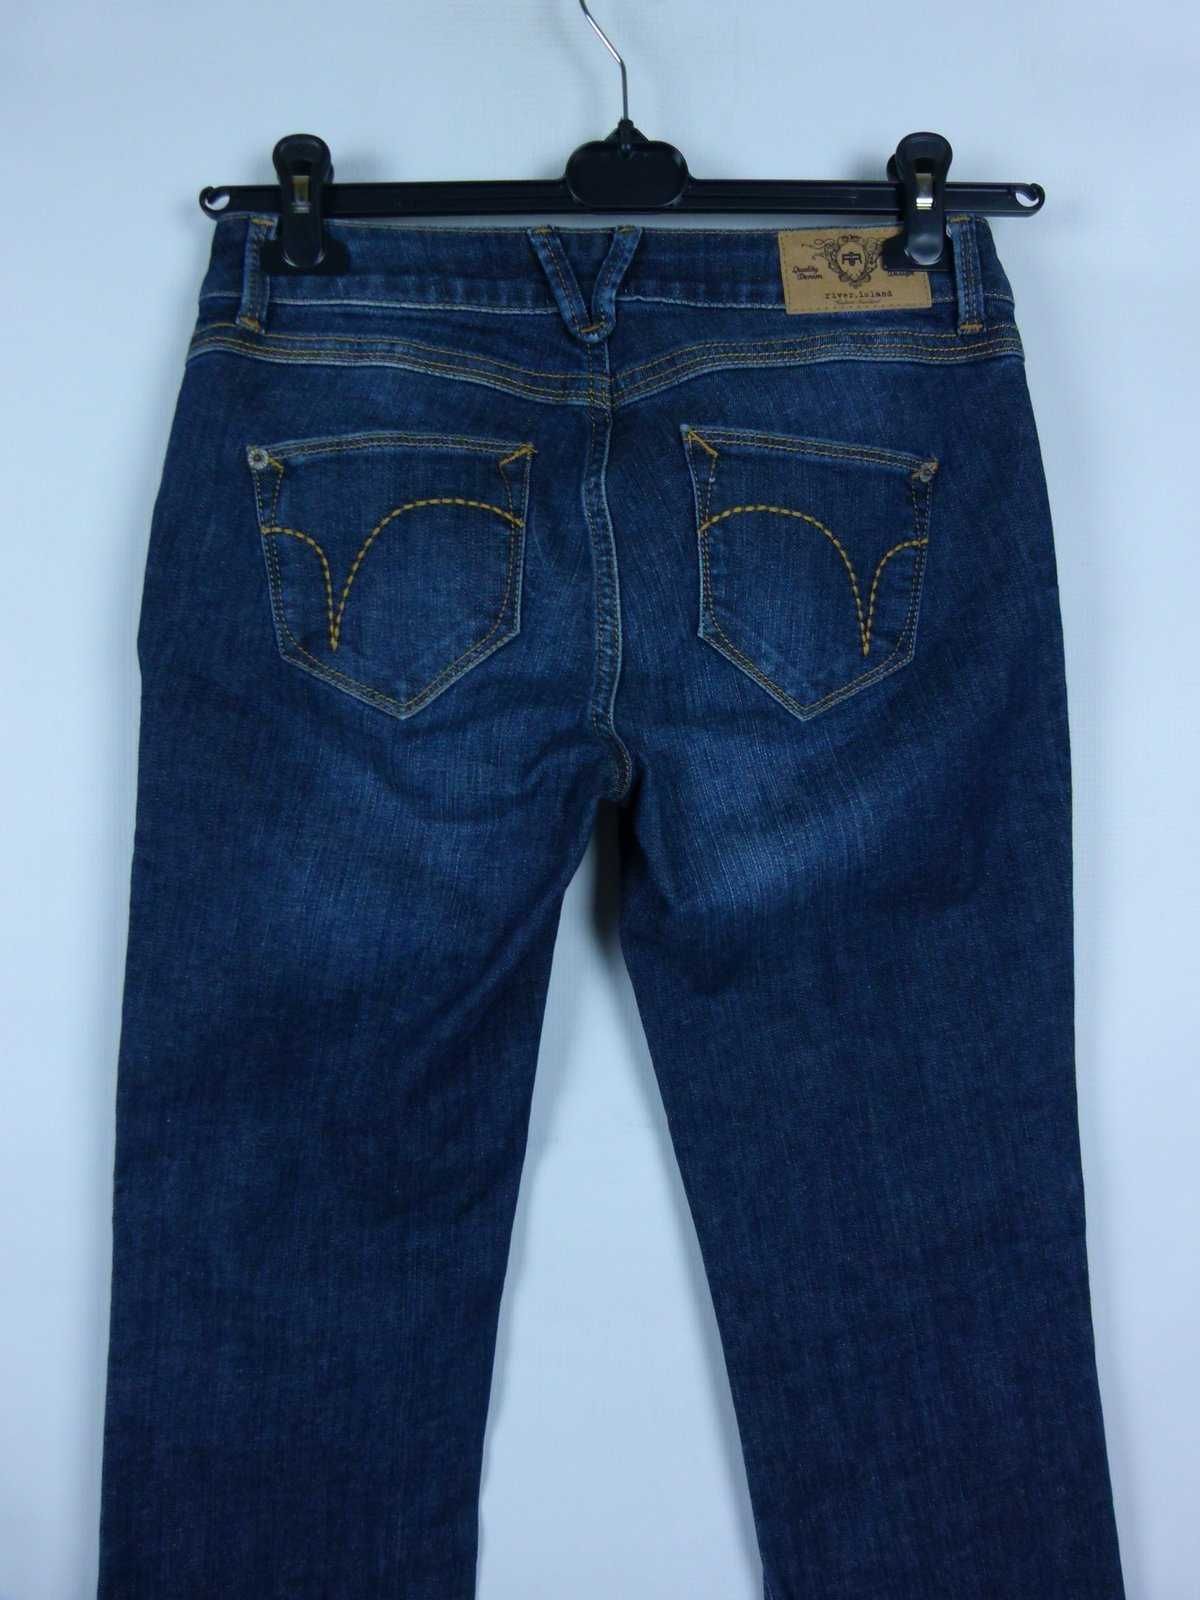 River Island spodnie dżins niski stan bootcut - 10S / 36S z metką